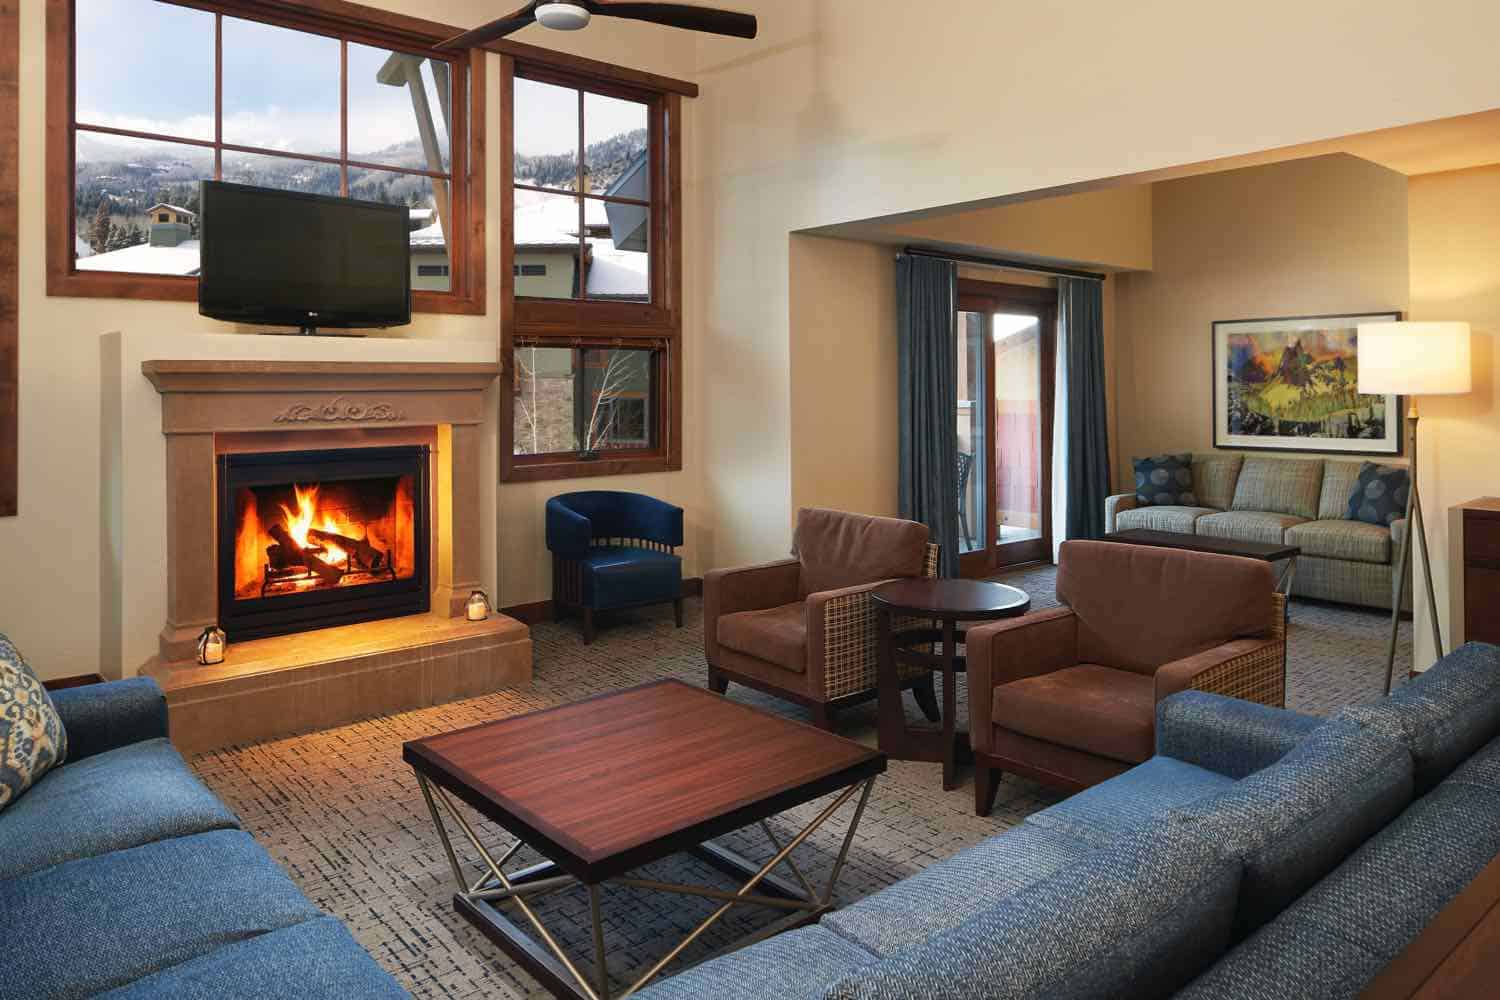 Living area in a ski lodge condo